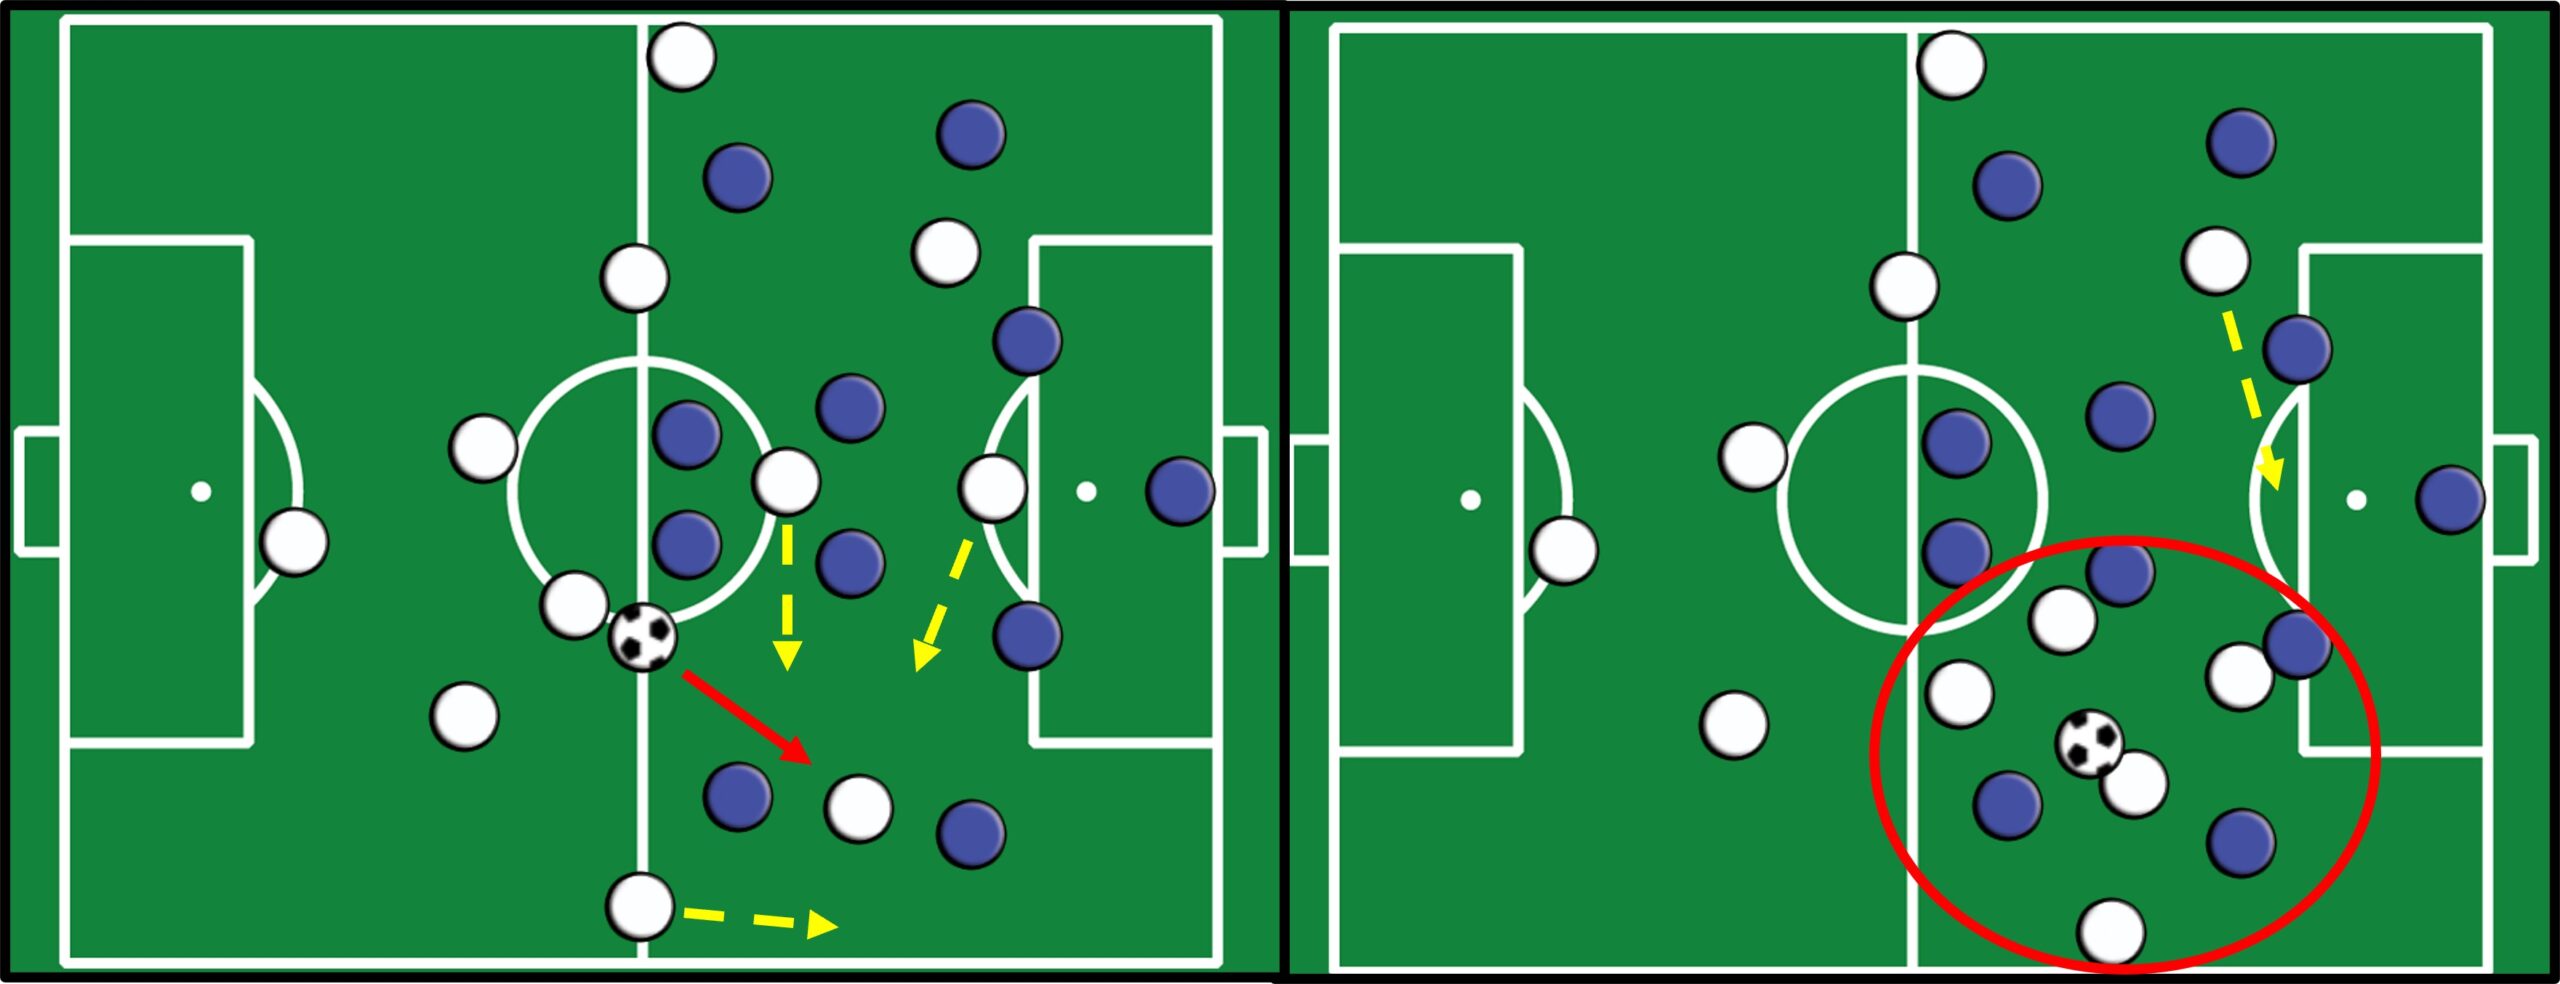 Campo de futebol com peças azuis e brancas representando jogadores. setas vermelhas indicando passe. setas amarelas indicando movimentação.